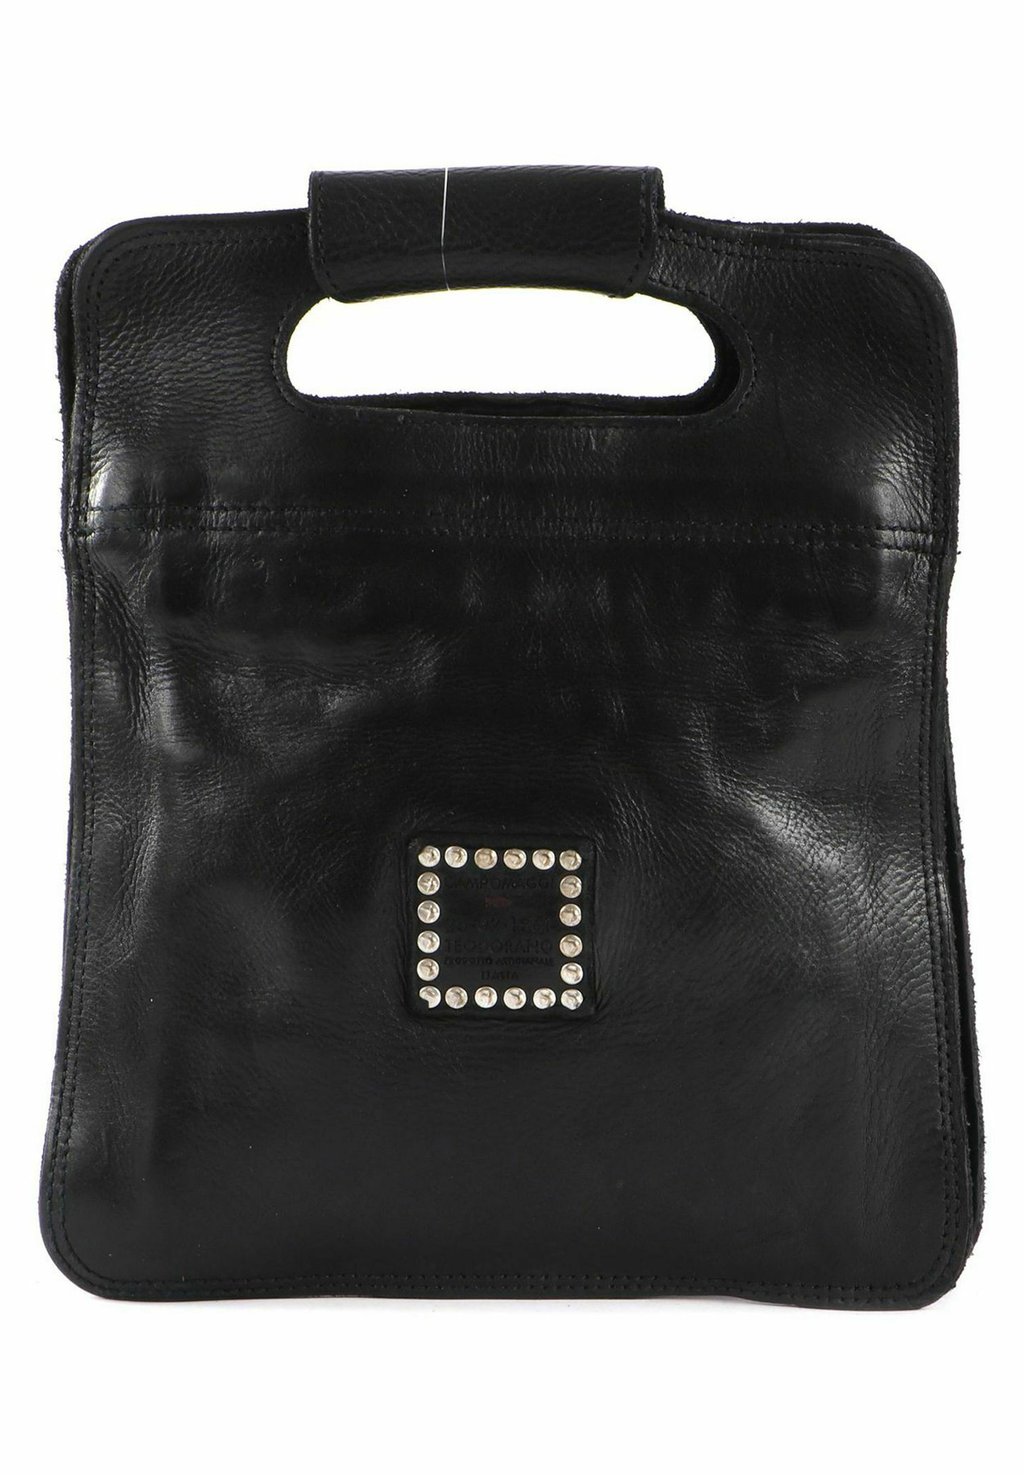 Сумка через плечо VERTICAL Campomaggi, цвет nero сумка через плечо cromia 1405147 crm nero cipria